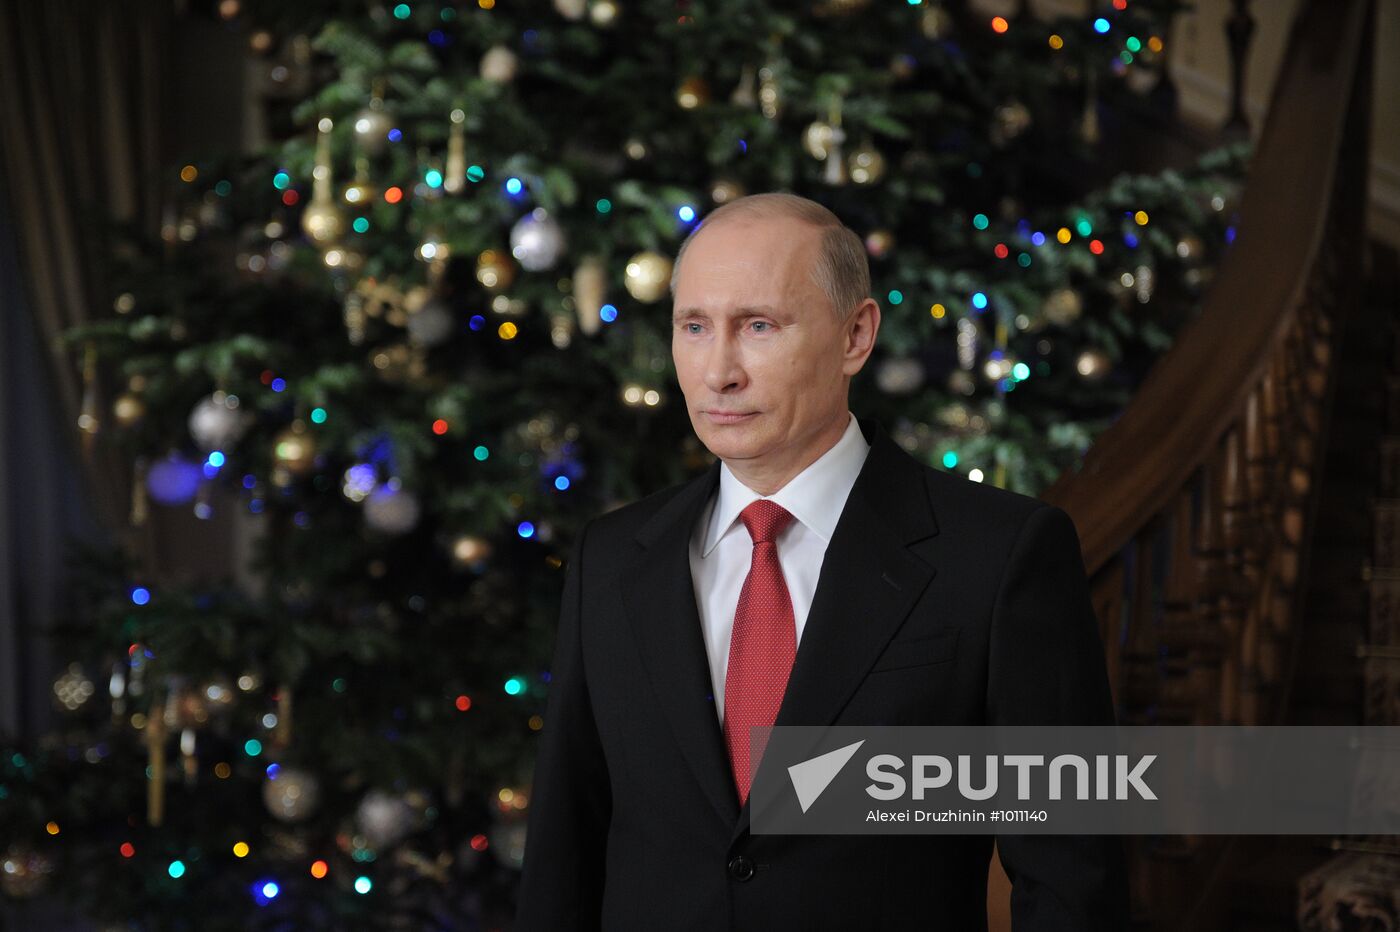 Vladimir Putin wishes nation happy New Year